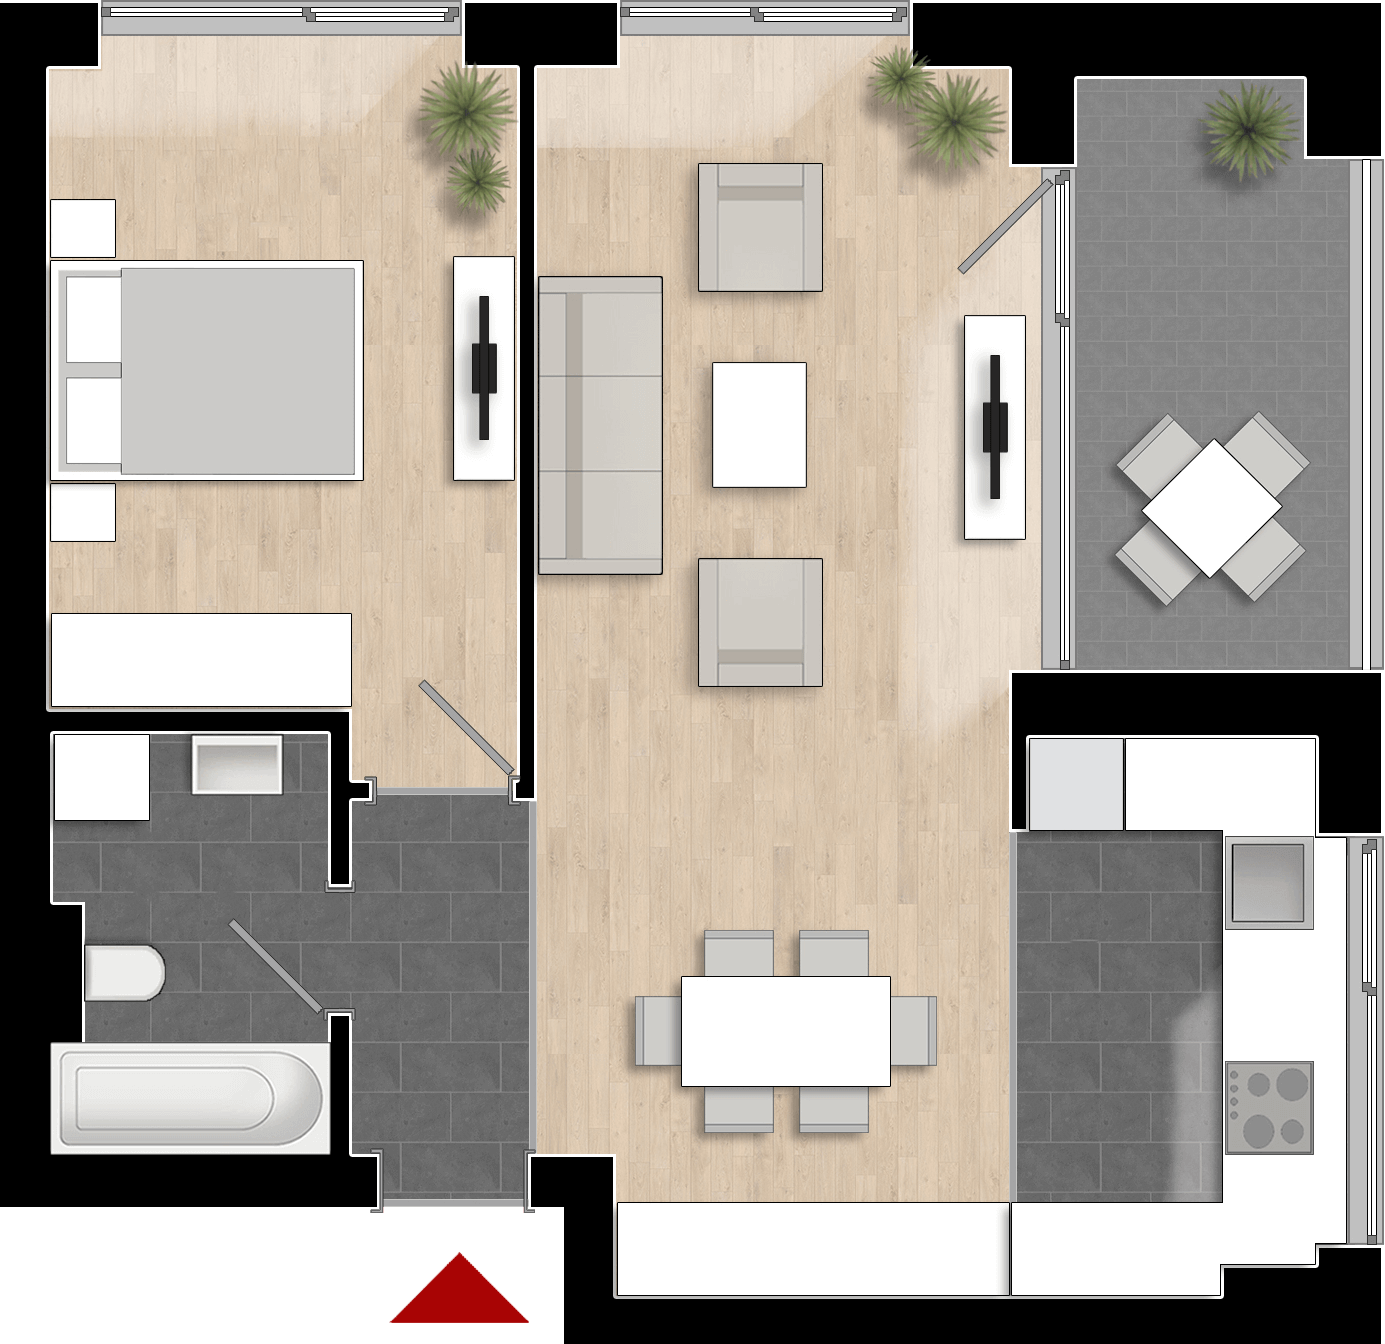  Apartament 409, Tip de apartament 2B cu 2 camere 